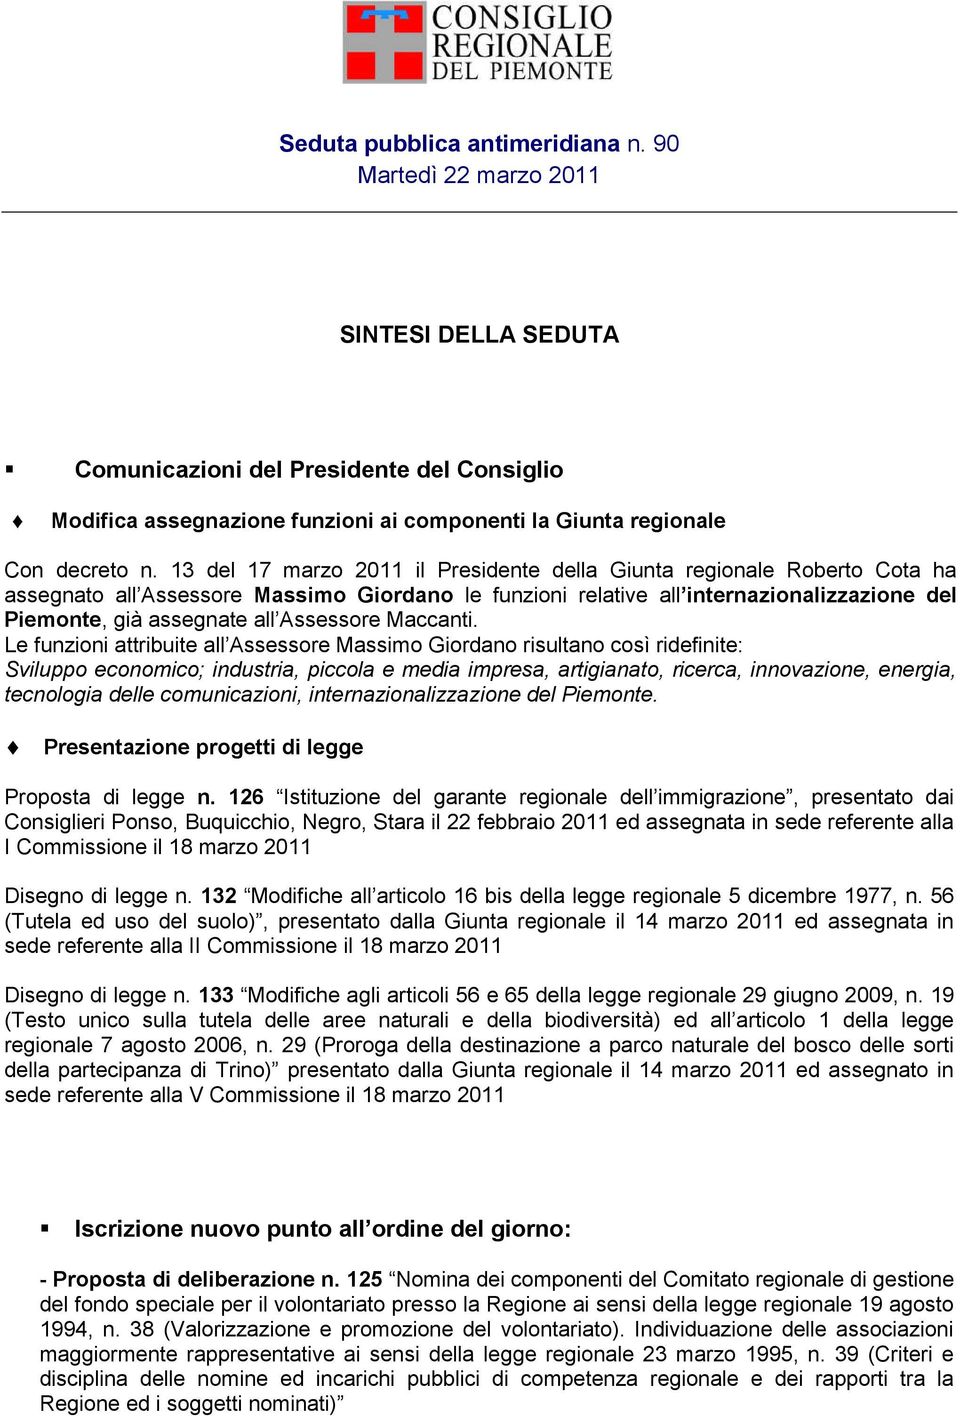 13 del 17 marzo 2011 il Presidente della Giunta regionale Roberto Cota ha assegnato all Assessore Massimo Giordano le funzioni relative all internazionalizzazione del Piemonte, già assegnate all